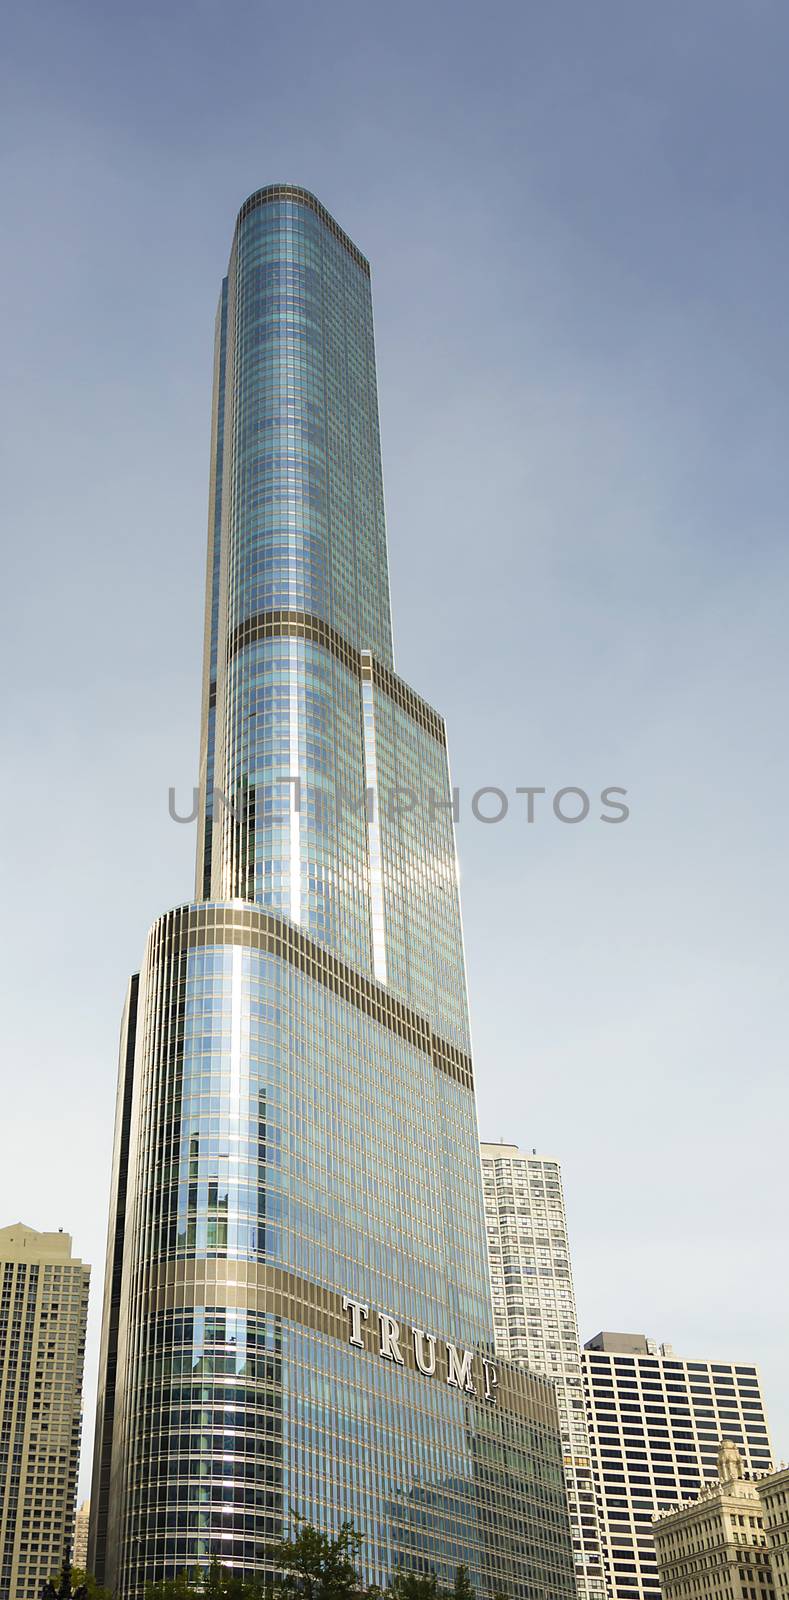 Trump Tower in Chicago by rarrarorro